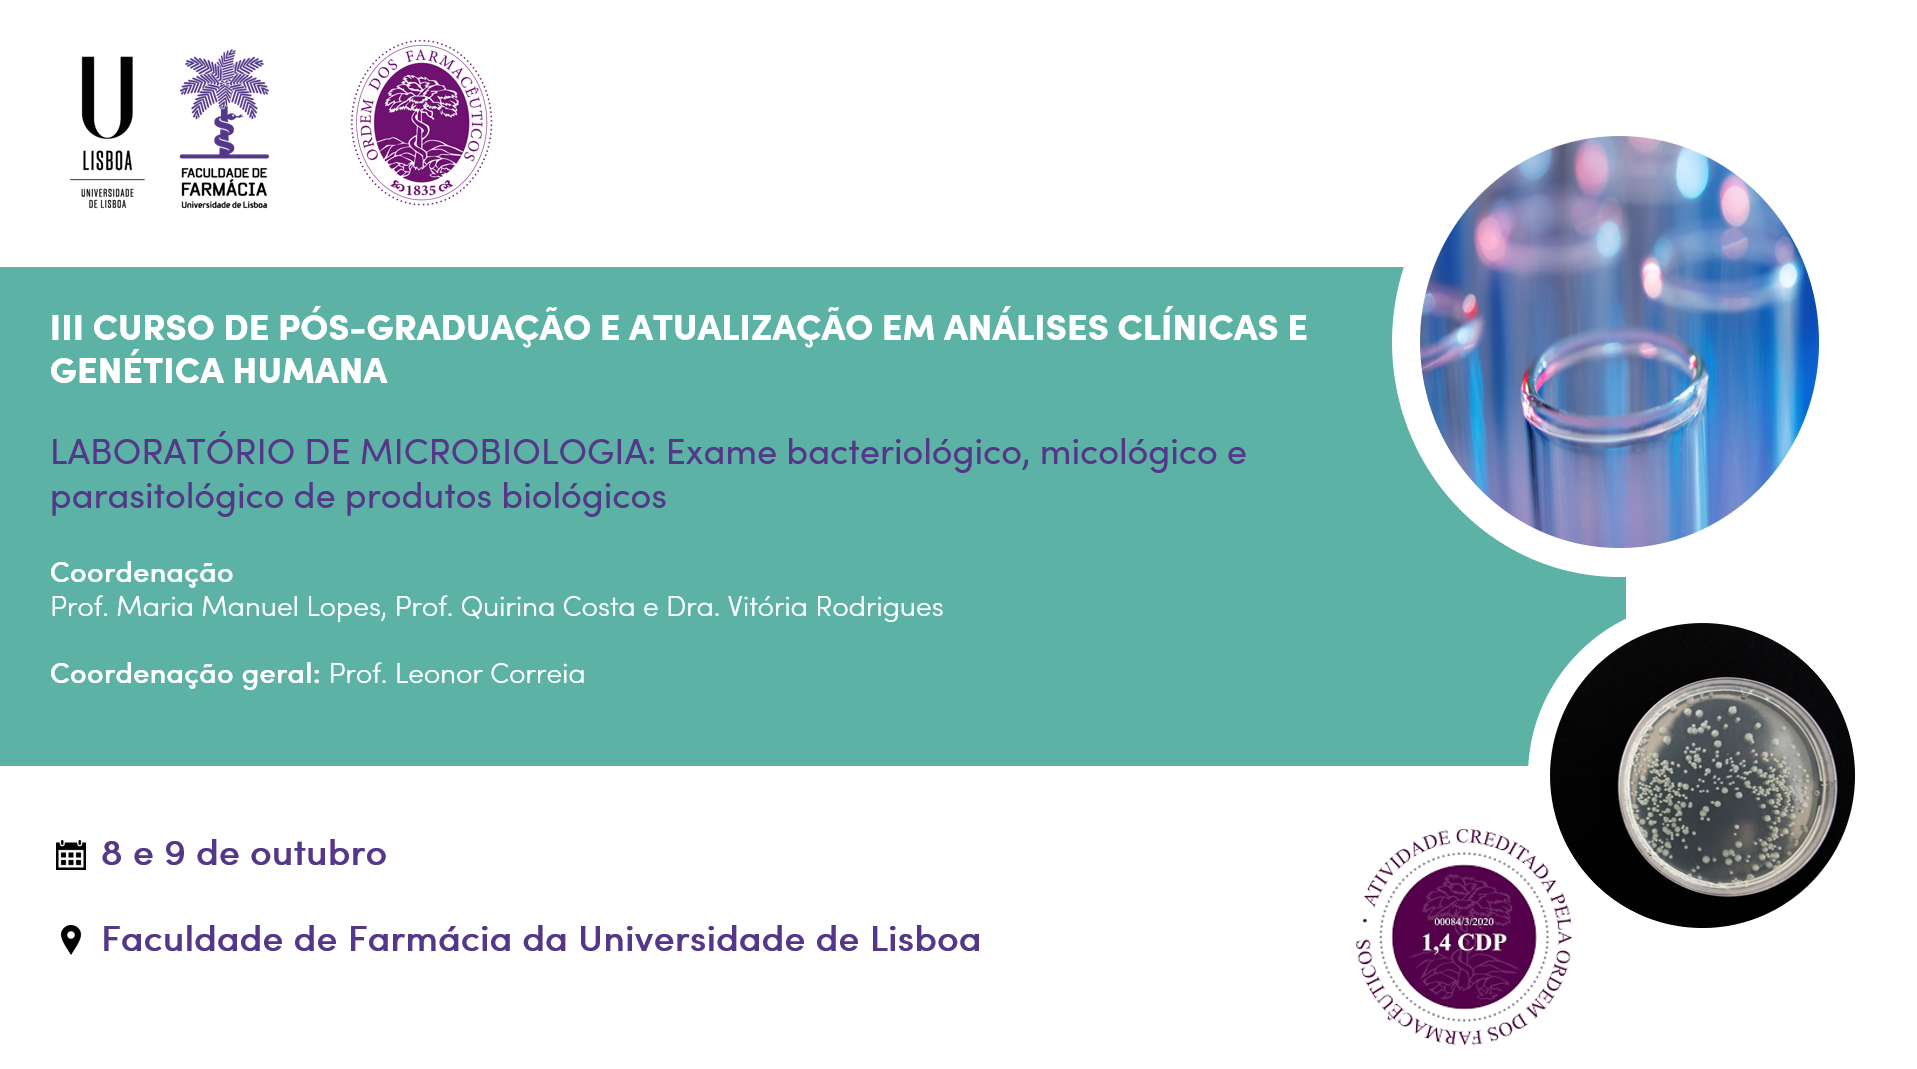 Curso de Pós-Graduação em Análises Clínicas: Exame bacteriológico, micológico e parasitológico de produtos biológicos